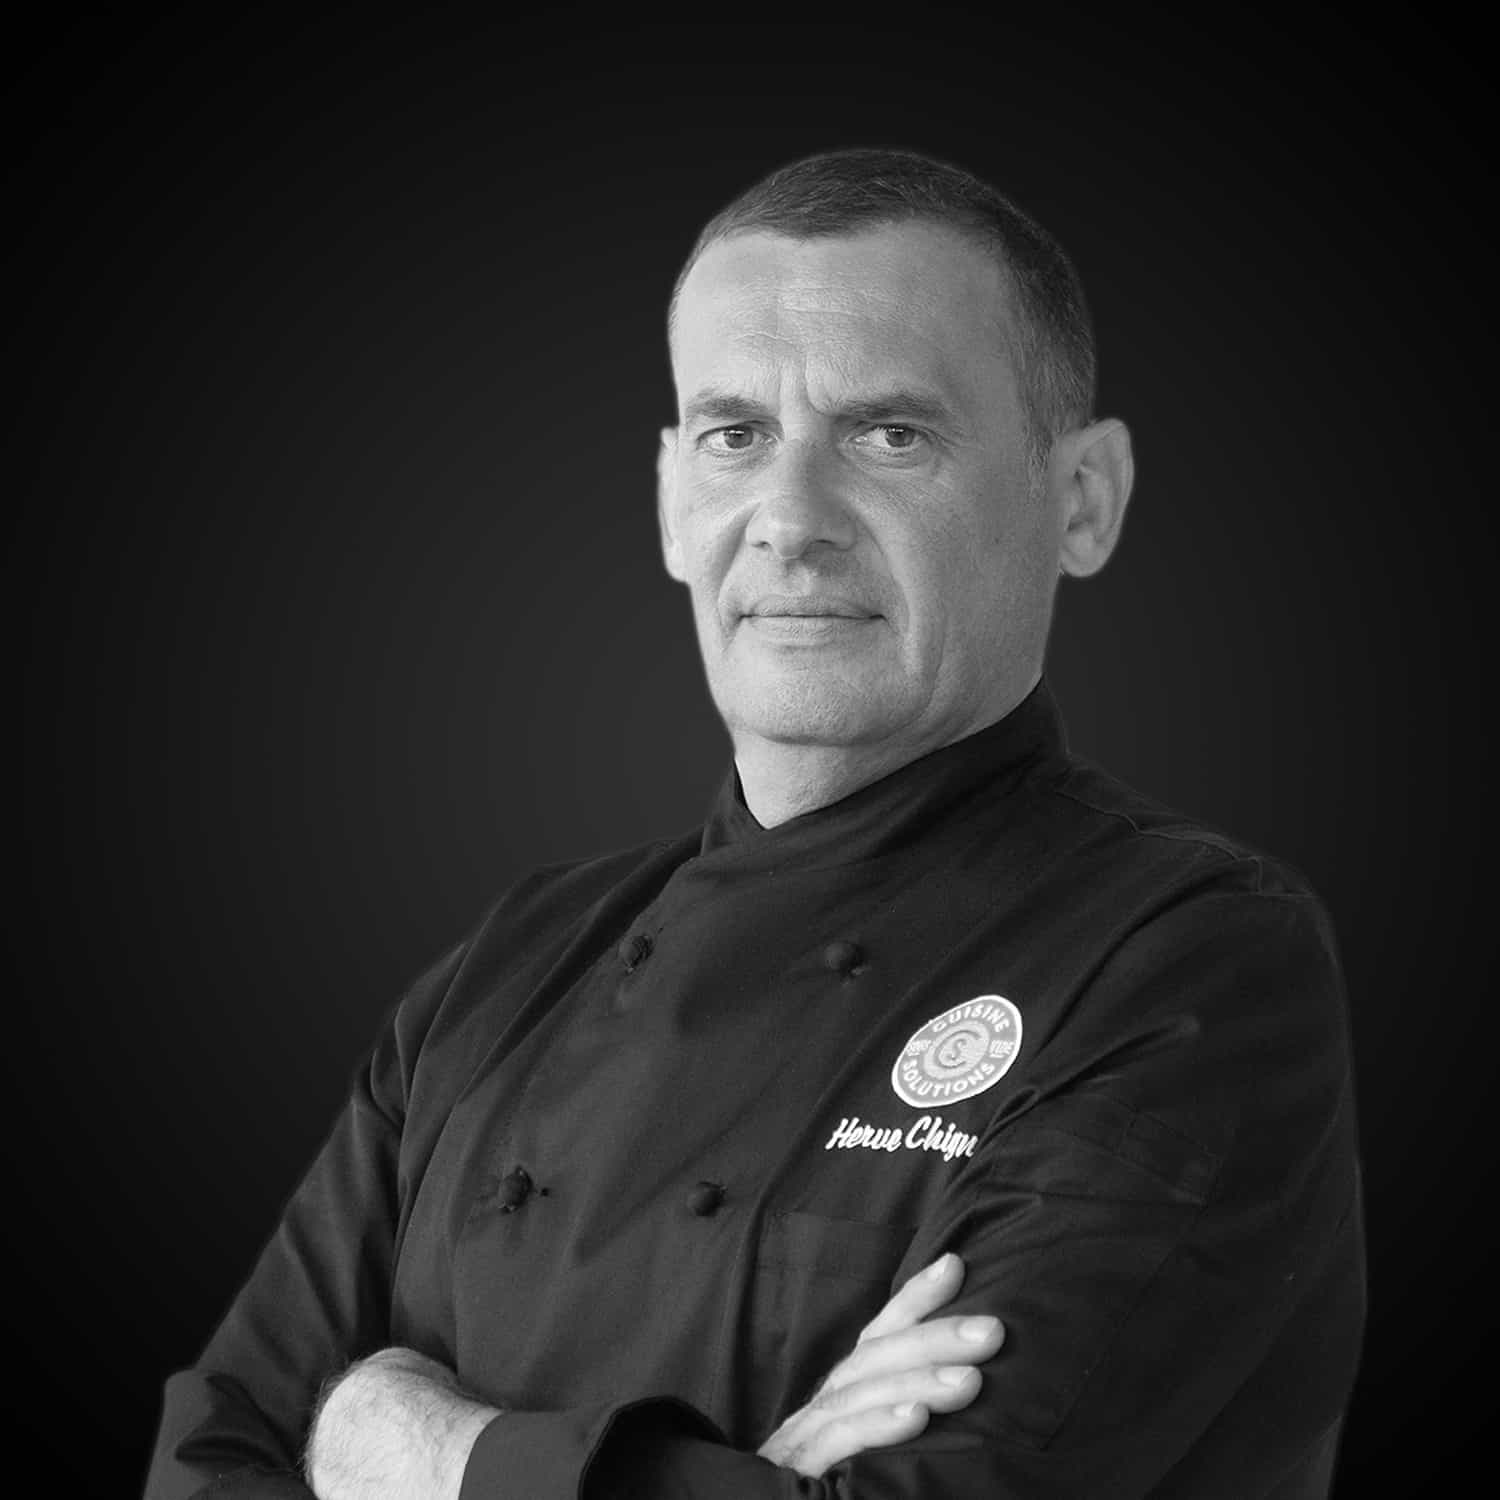 Portrait of Chef Herve Chignon